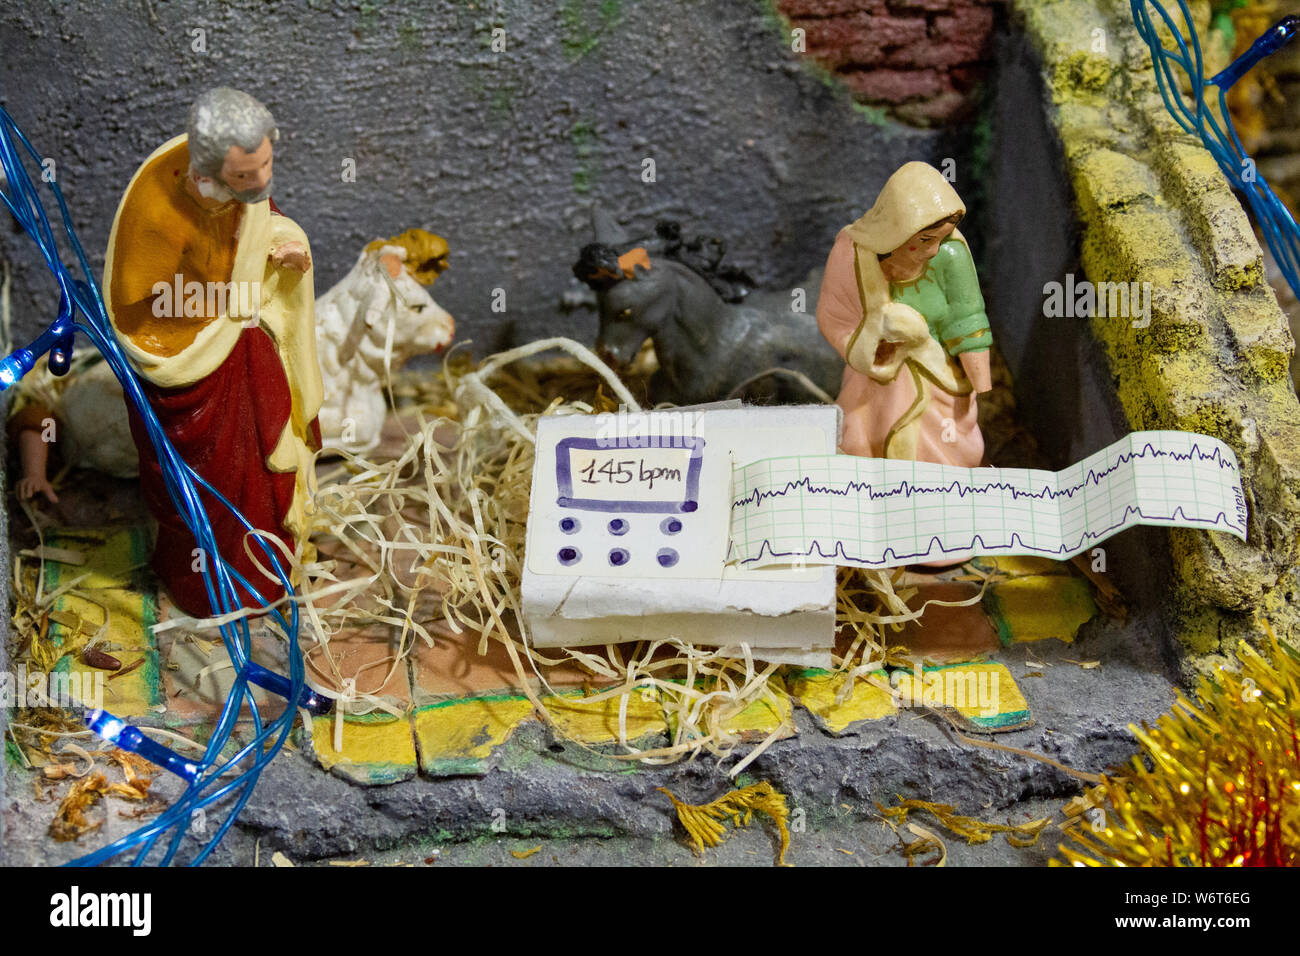 Crèche de Noël pendant l'Avent avec cardiotocograph/monitorage électronique du foetus (EFM) au lieu de l'Enfant Jésus. Banque D'Images